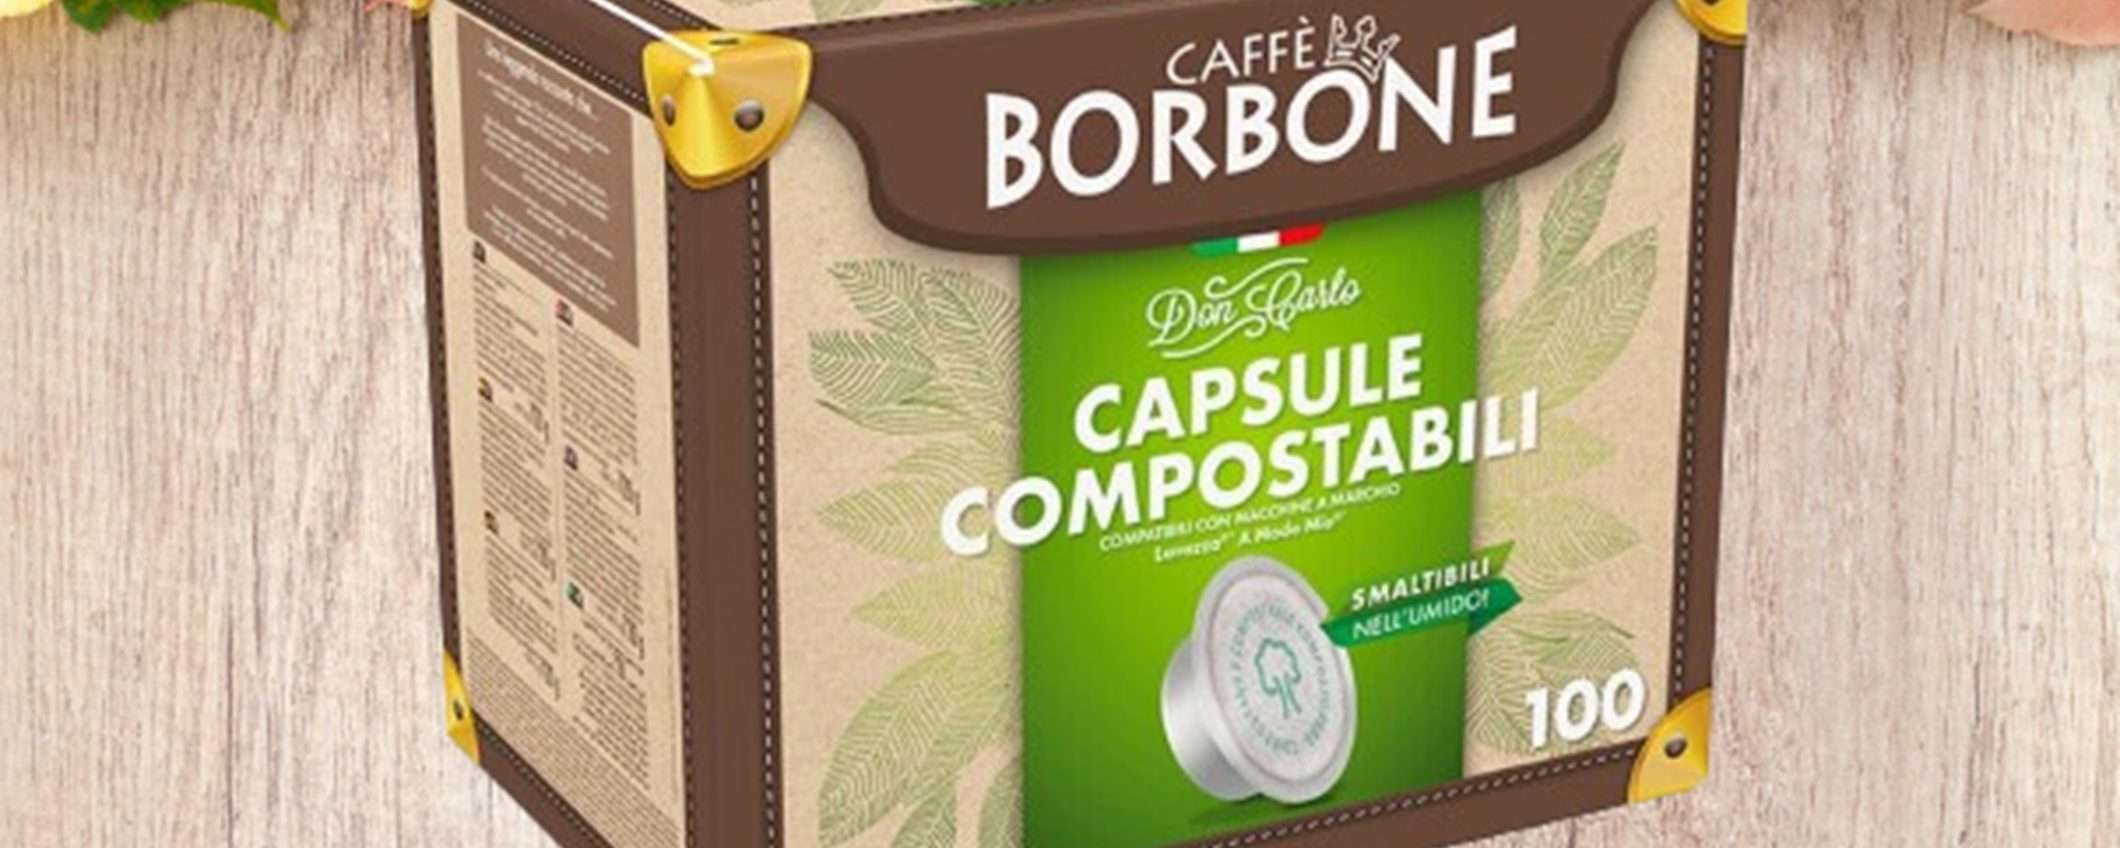 200 capsule compostabili caffè Borbone miscela Rossa per A Modo Mio a un prezzo MAI VISTO